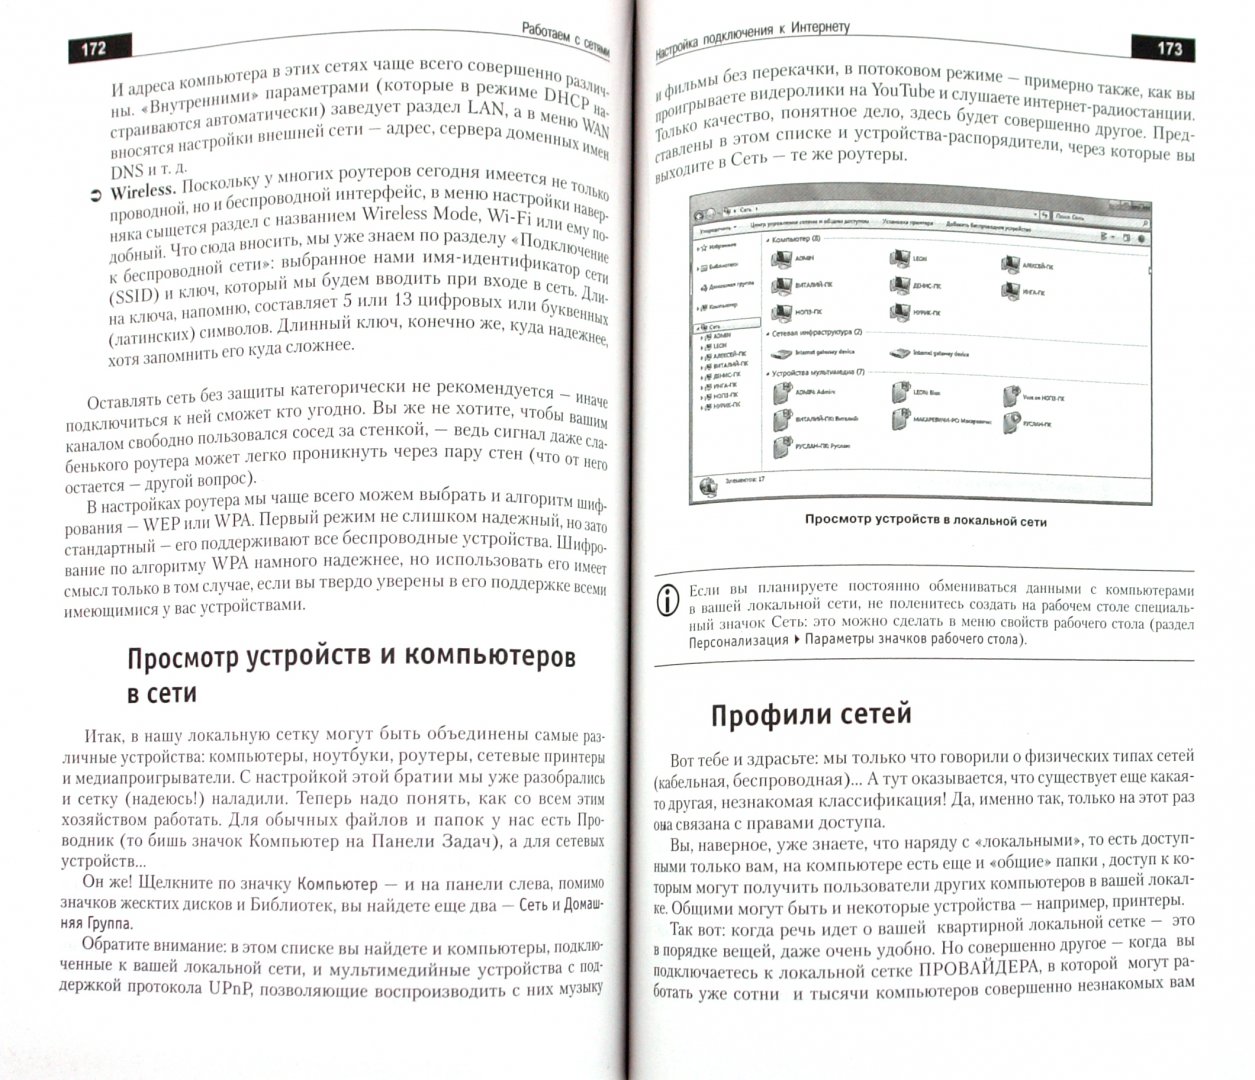 Иллюстрация 1 из 8 для Новейший самоучитель Windows 7 - Виталий Леонтьев | Лабиринт - книги. Источник: Лабиринт